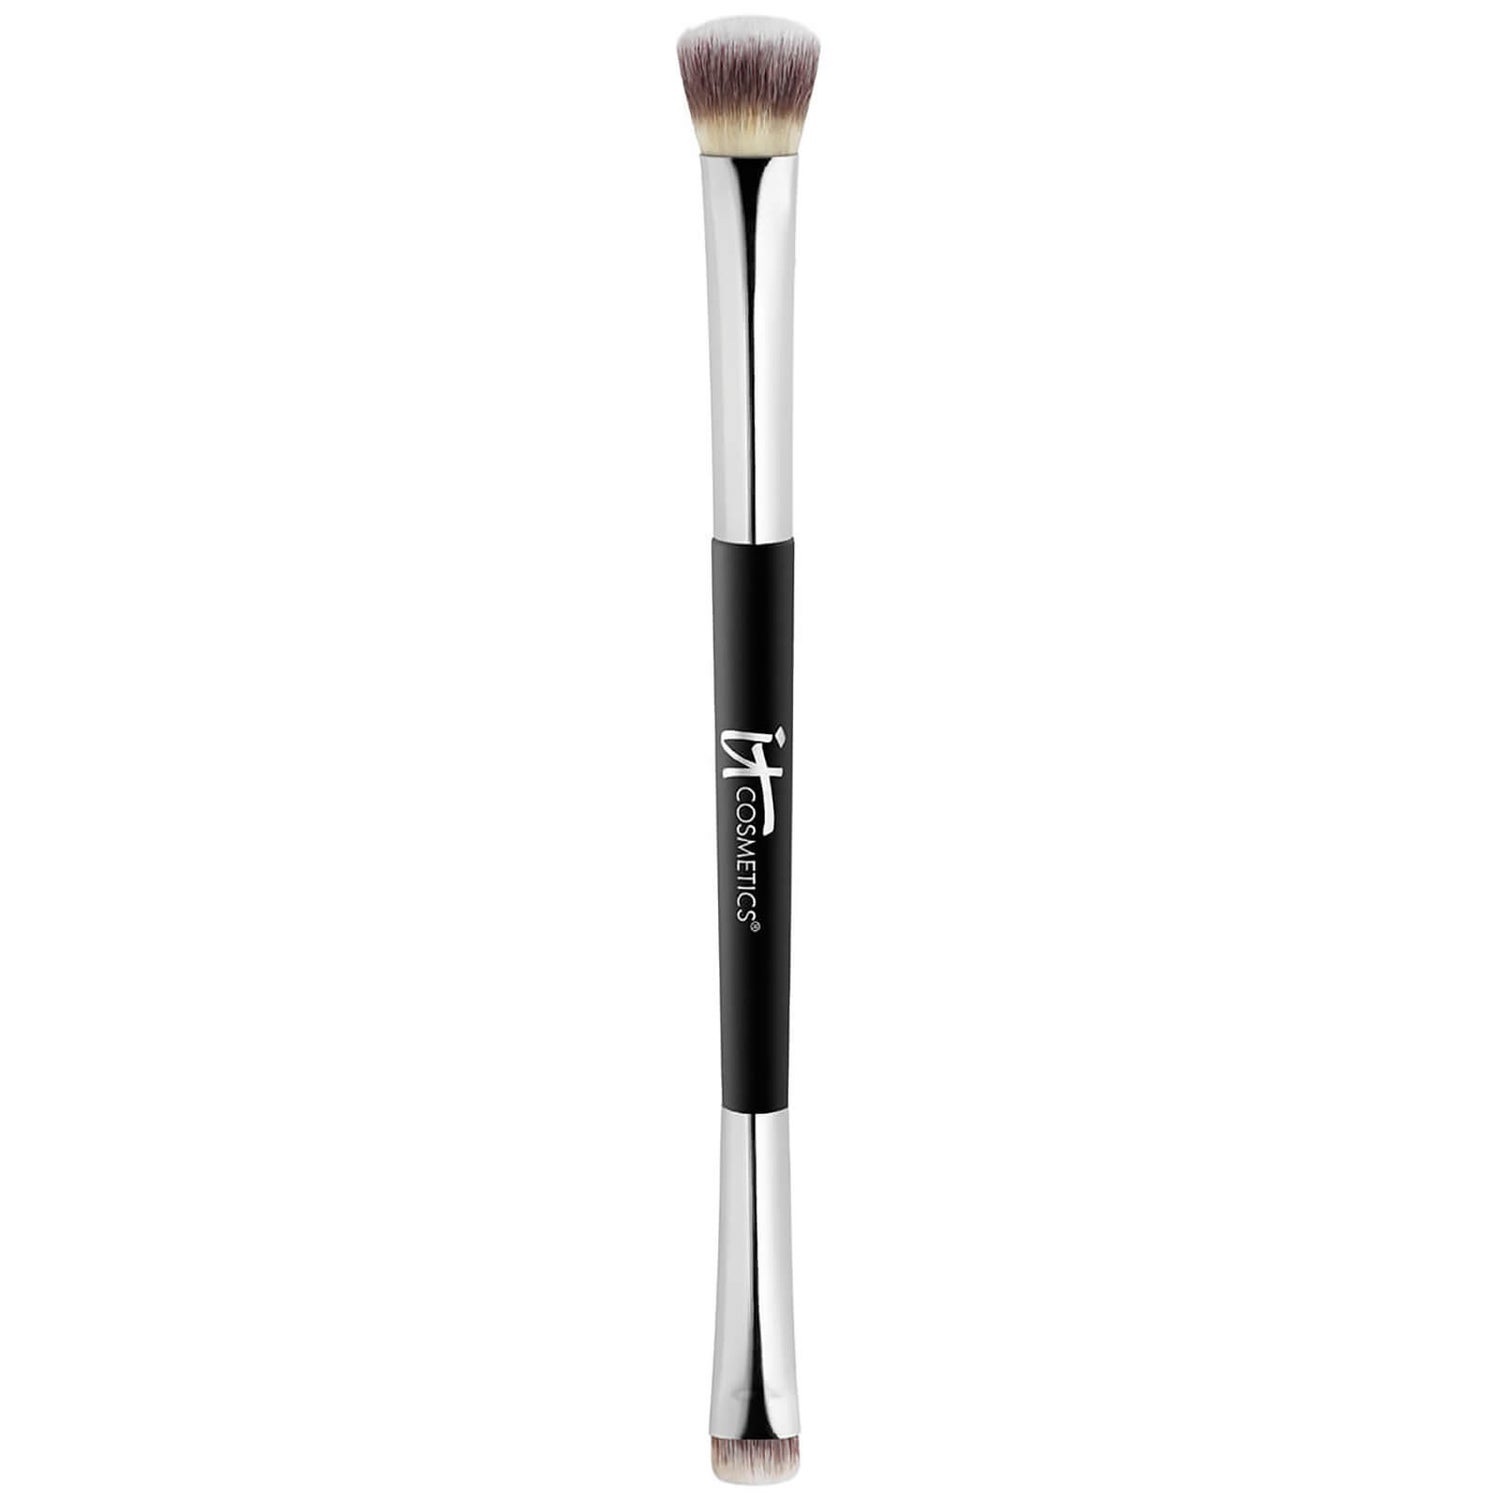 IT Cosmetics Heavenly Luxe No-Tug pennello per ombretto a doppia punta #5